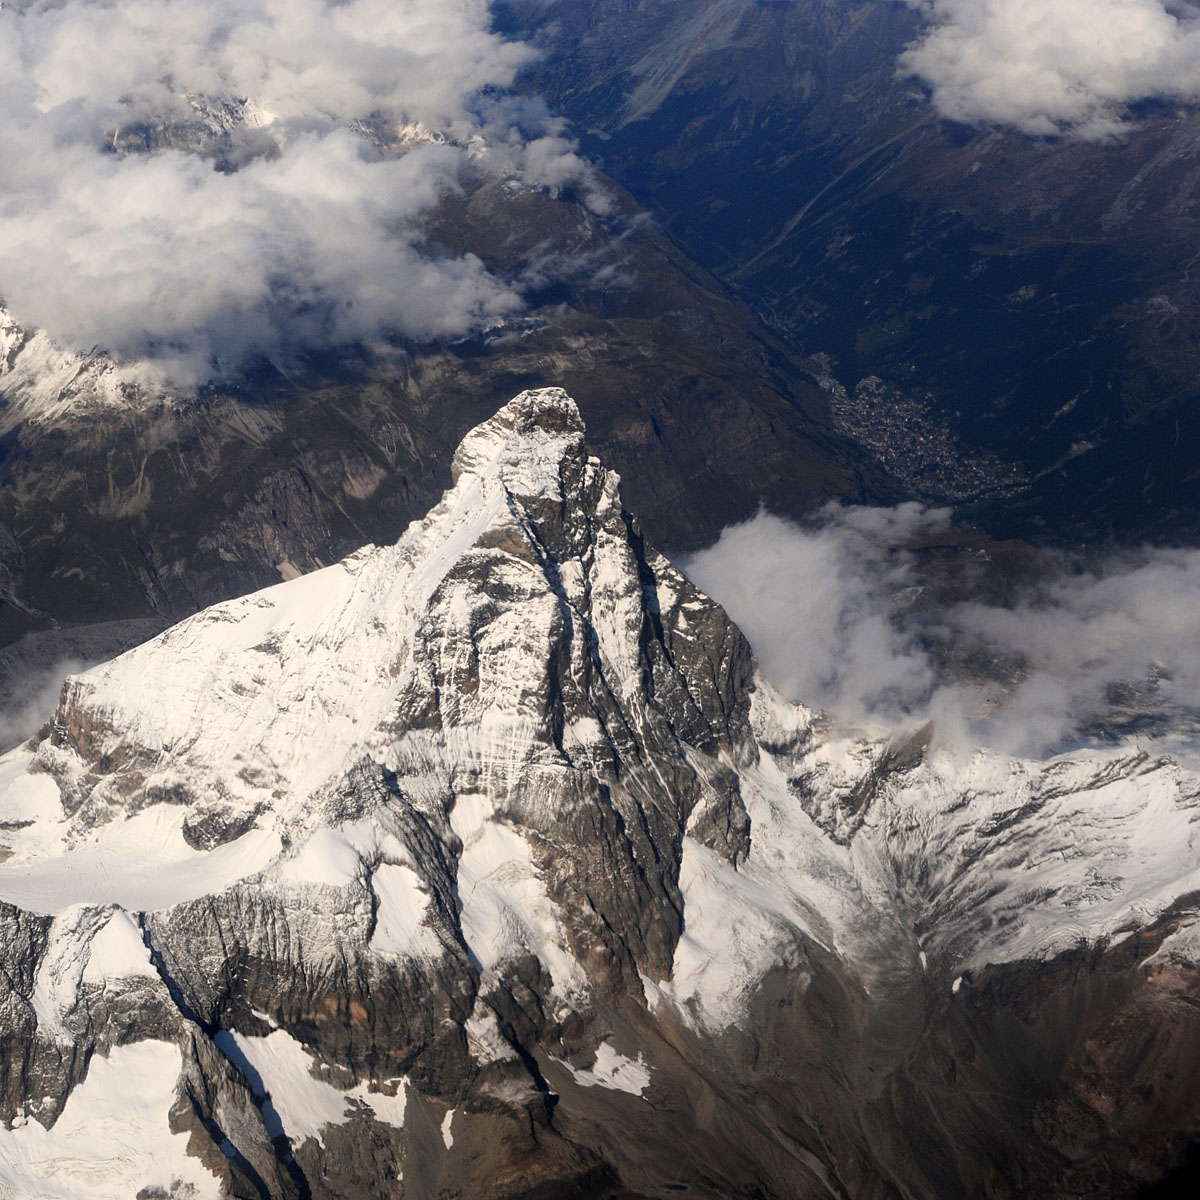 Matterhorn 4,478 m above sea level...